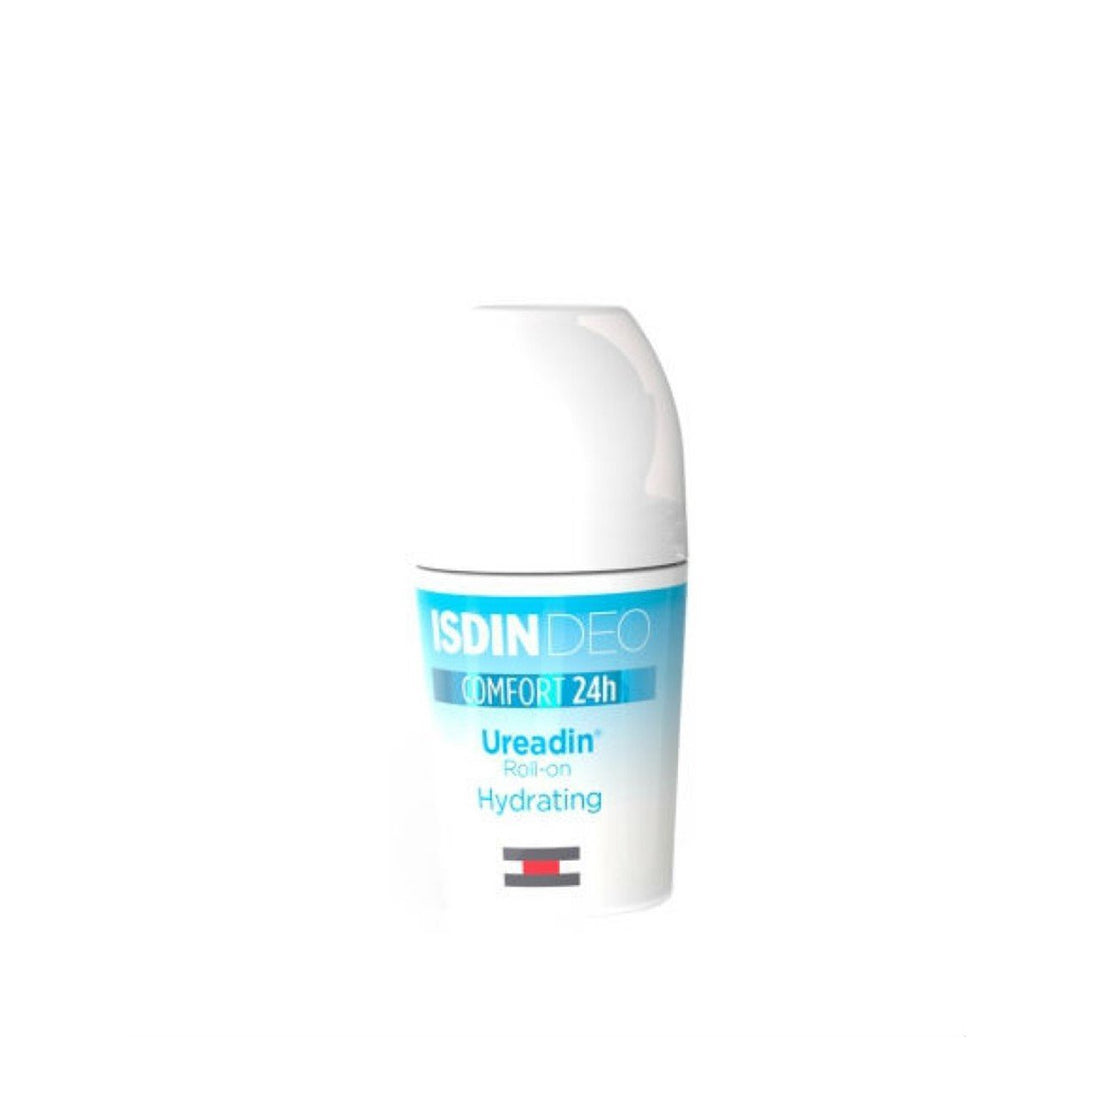 ISDIN Ureadin Comfort 24h Moisturizing Deodorant Roll-on 50ml